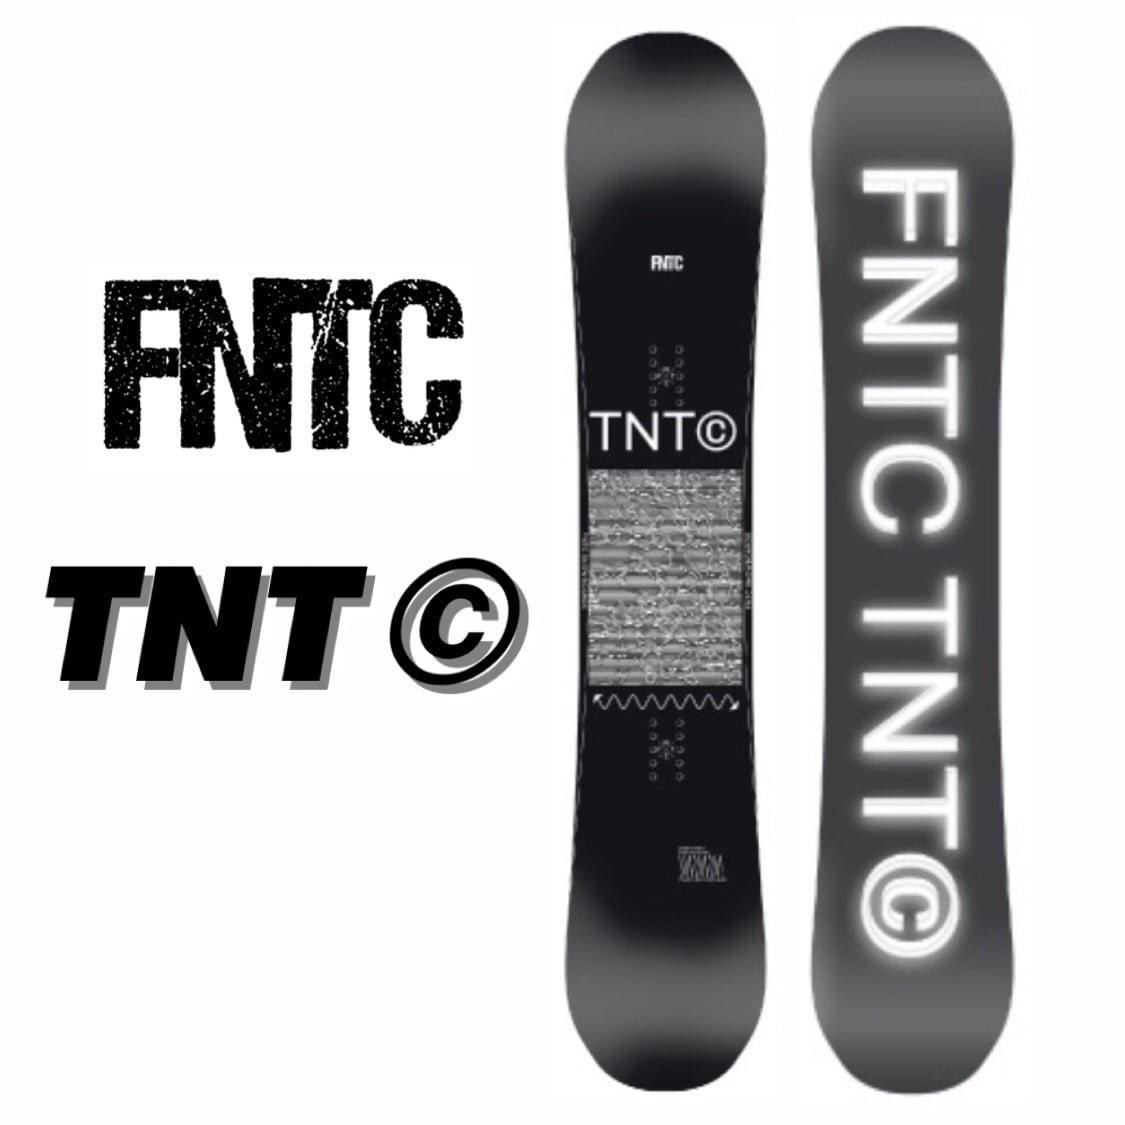 スポーツ/アウトドアスノーボード FNTC TNTc 20-21 150cm